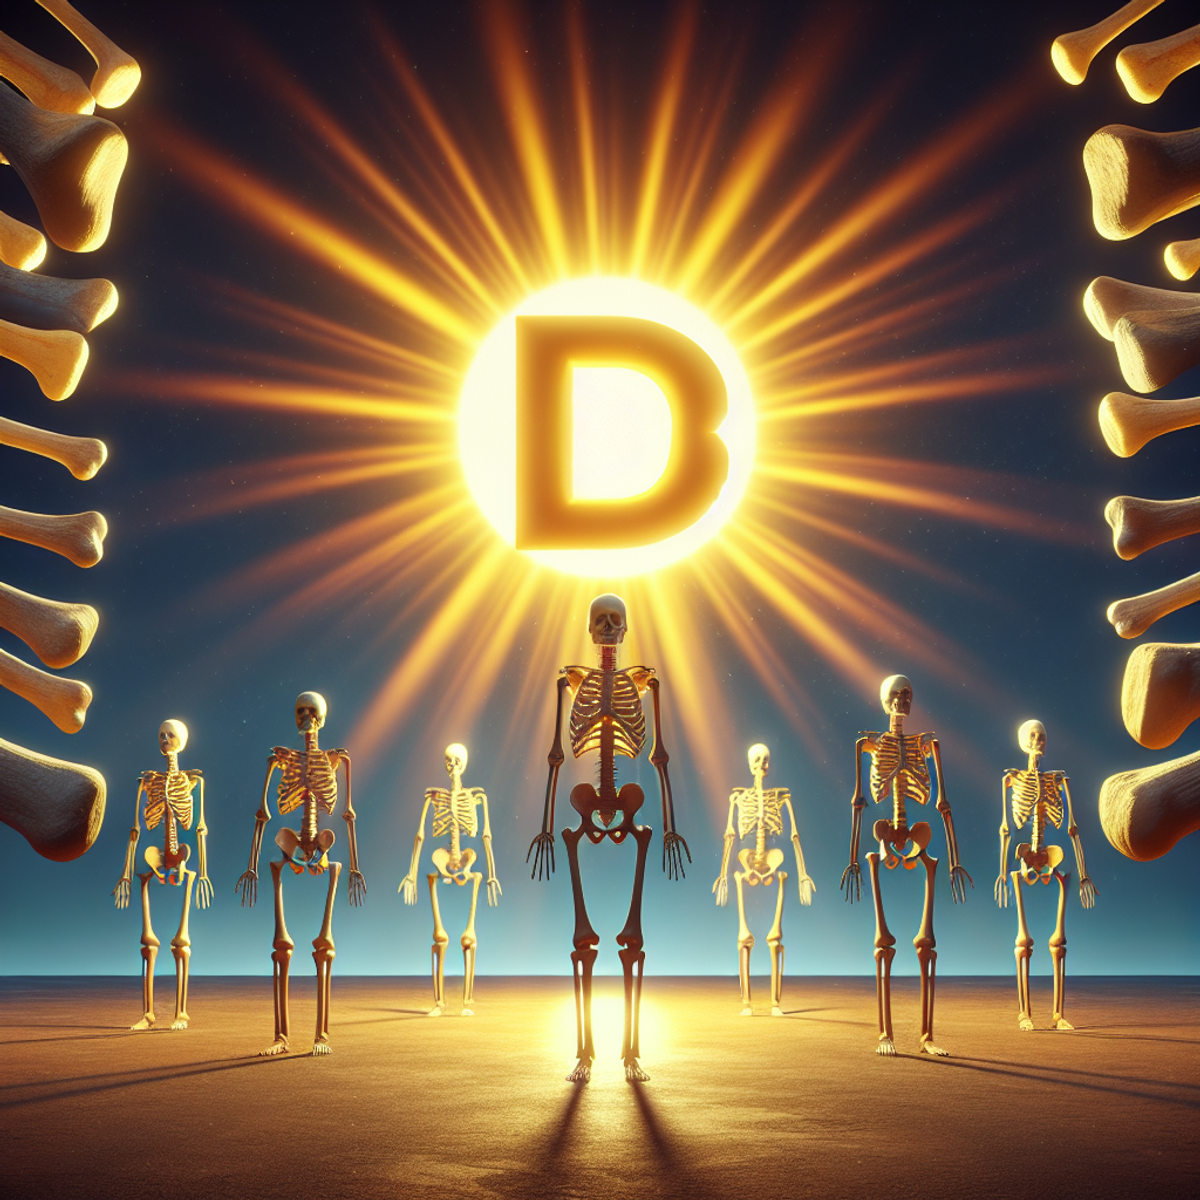 Un sole splende su un simbolo D3, emettendo raggi verso ossa umane sane.